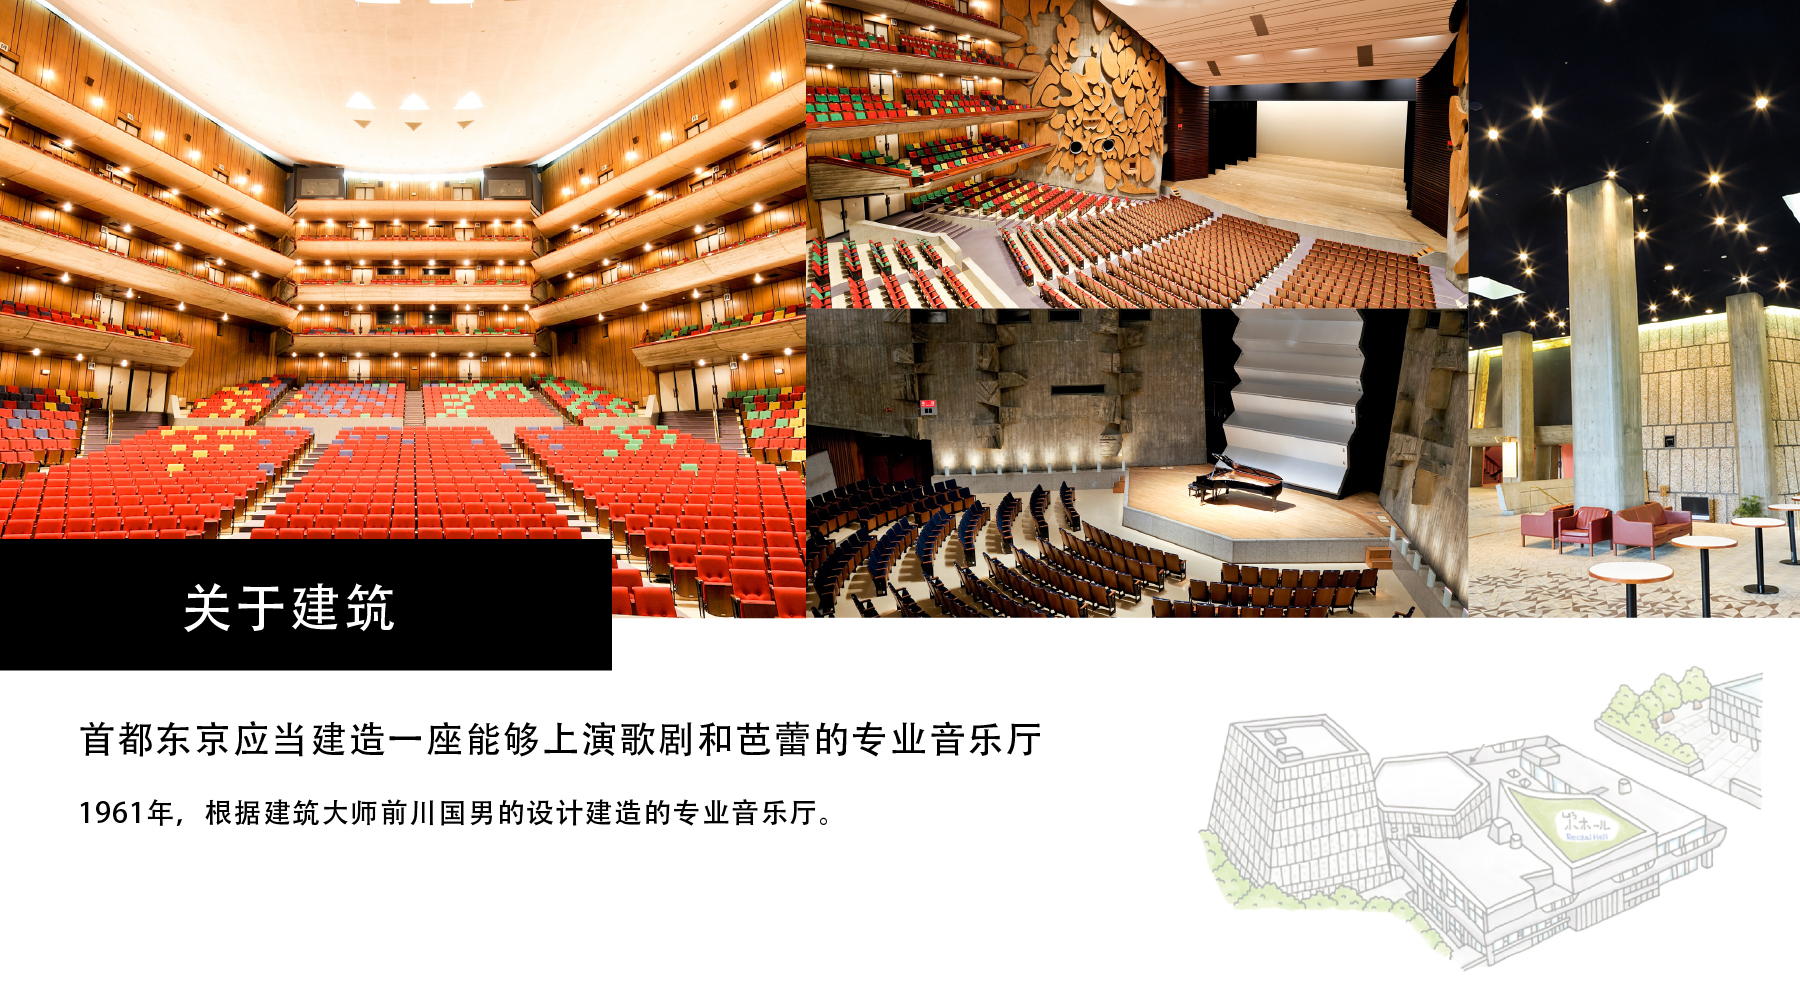 关于建筑 首都东京应当建造一座能够上演歌剧和芭蕾的专业音乐厅 1961年，根据建筑大师前川国男的设计建造的专业音乐厅。